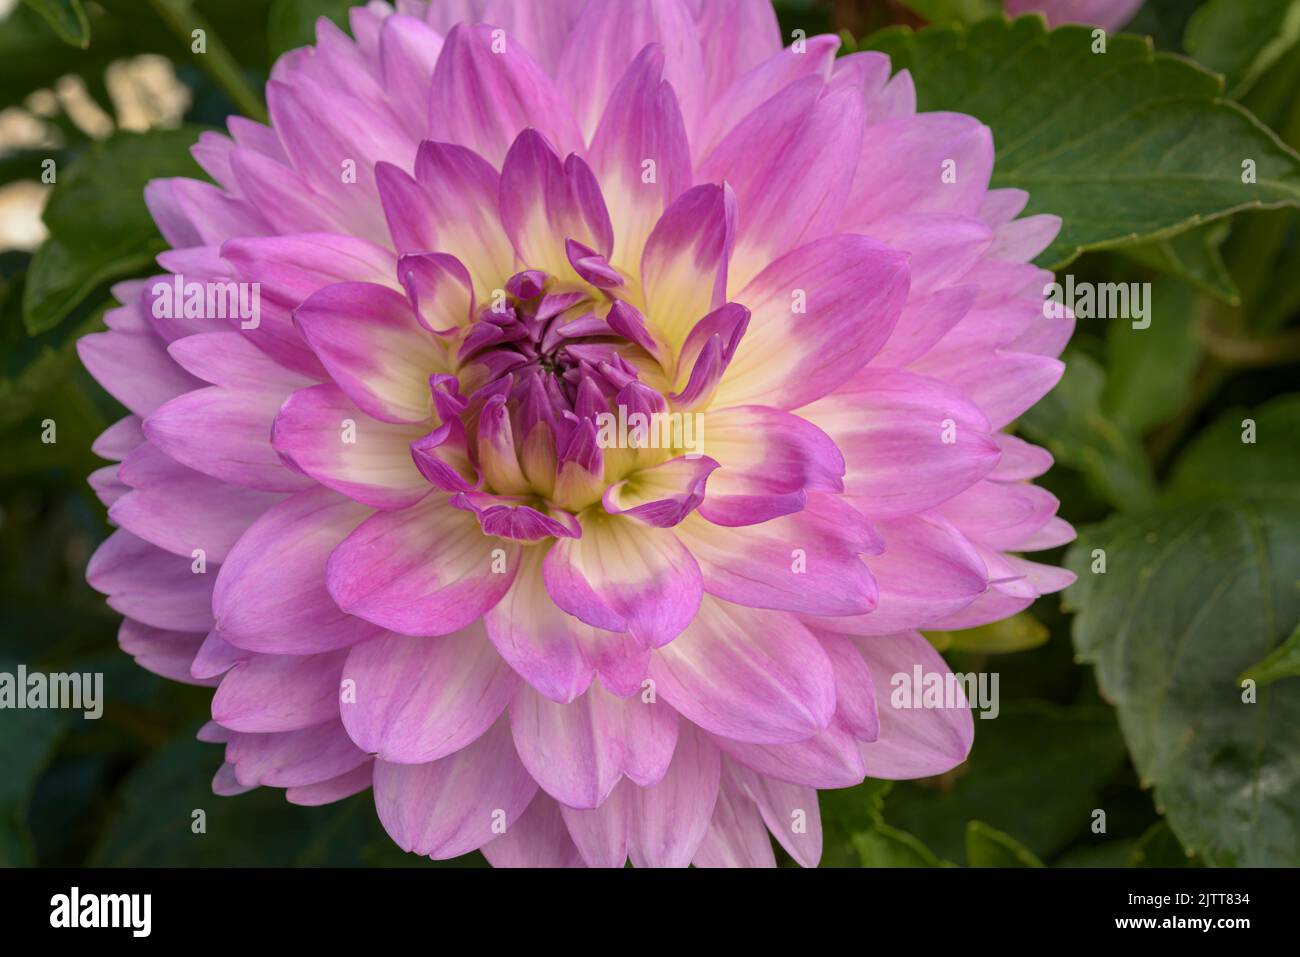 Flor de dalia rosa y amarilla fotografías e imágenes de alta resolución -  Página 2 - Alamy